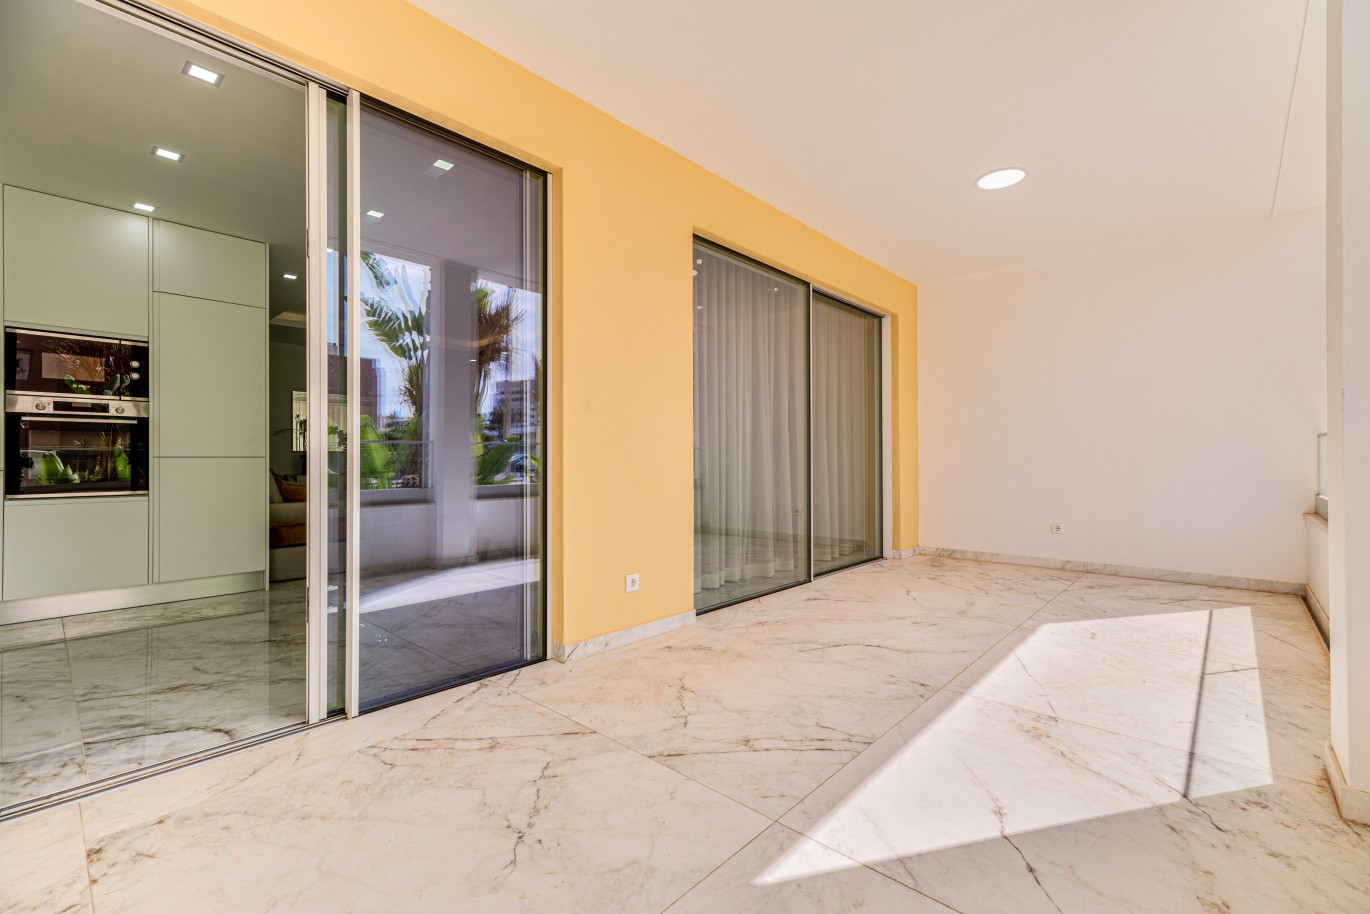 Apartamento, com terraço, para venda, em Lagos, Algarve_238232